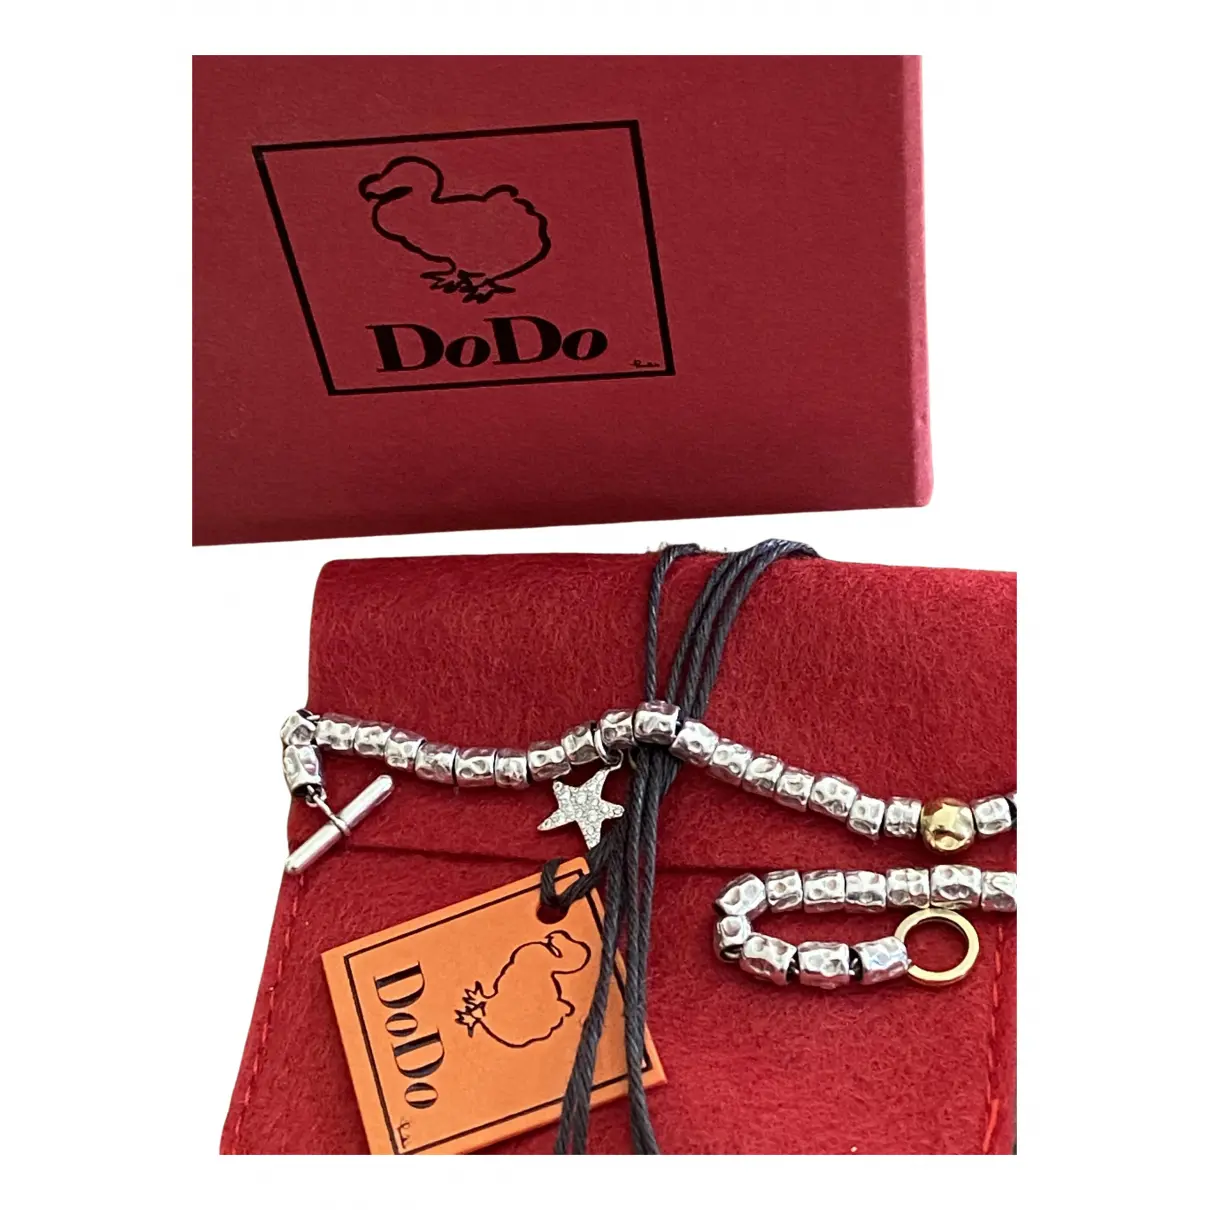 Buy Dodo Etoile white gold bracelet online